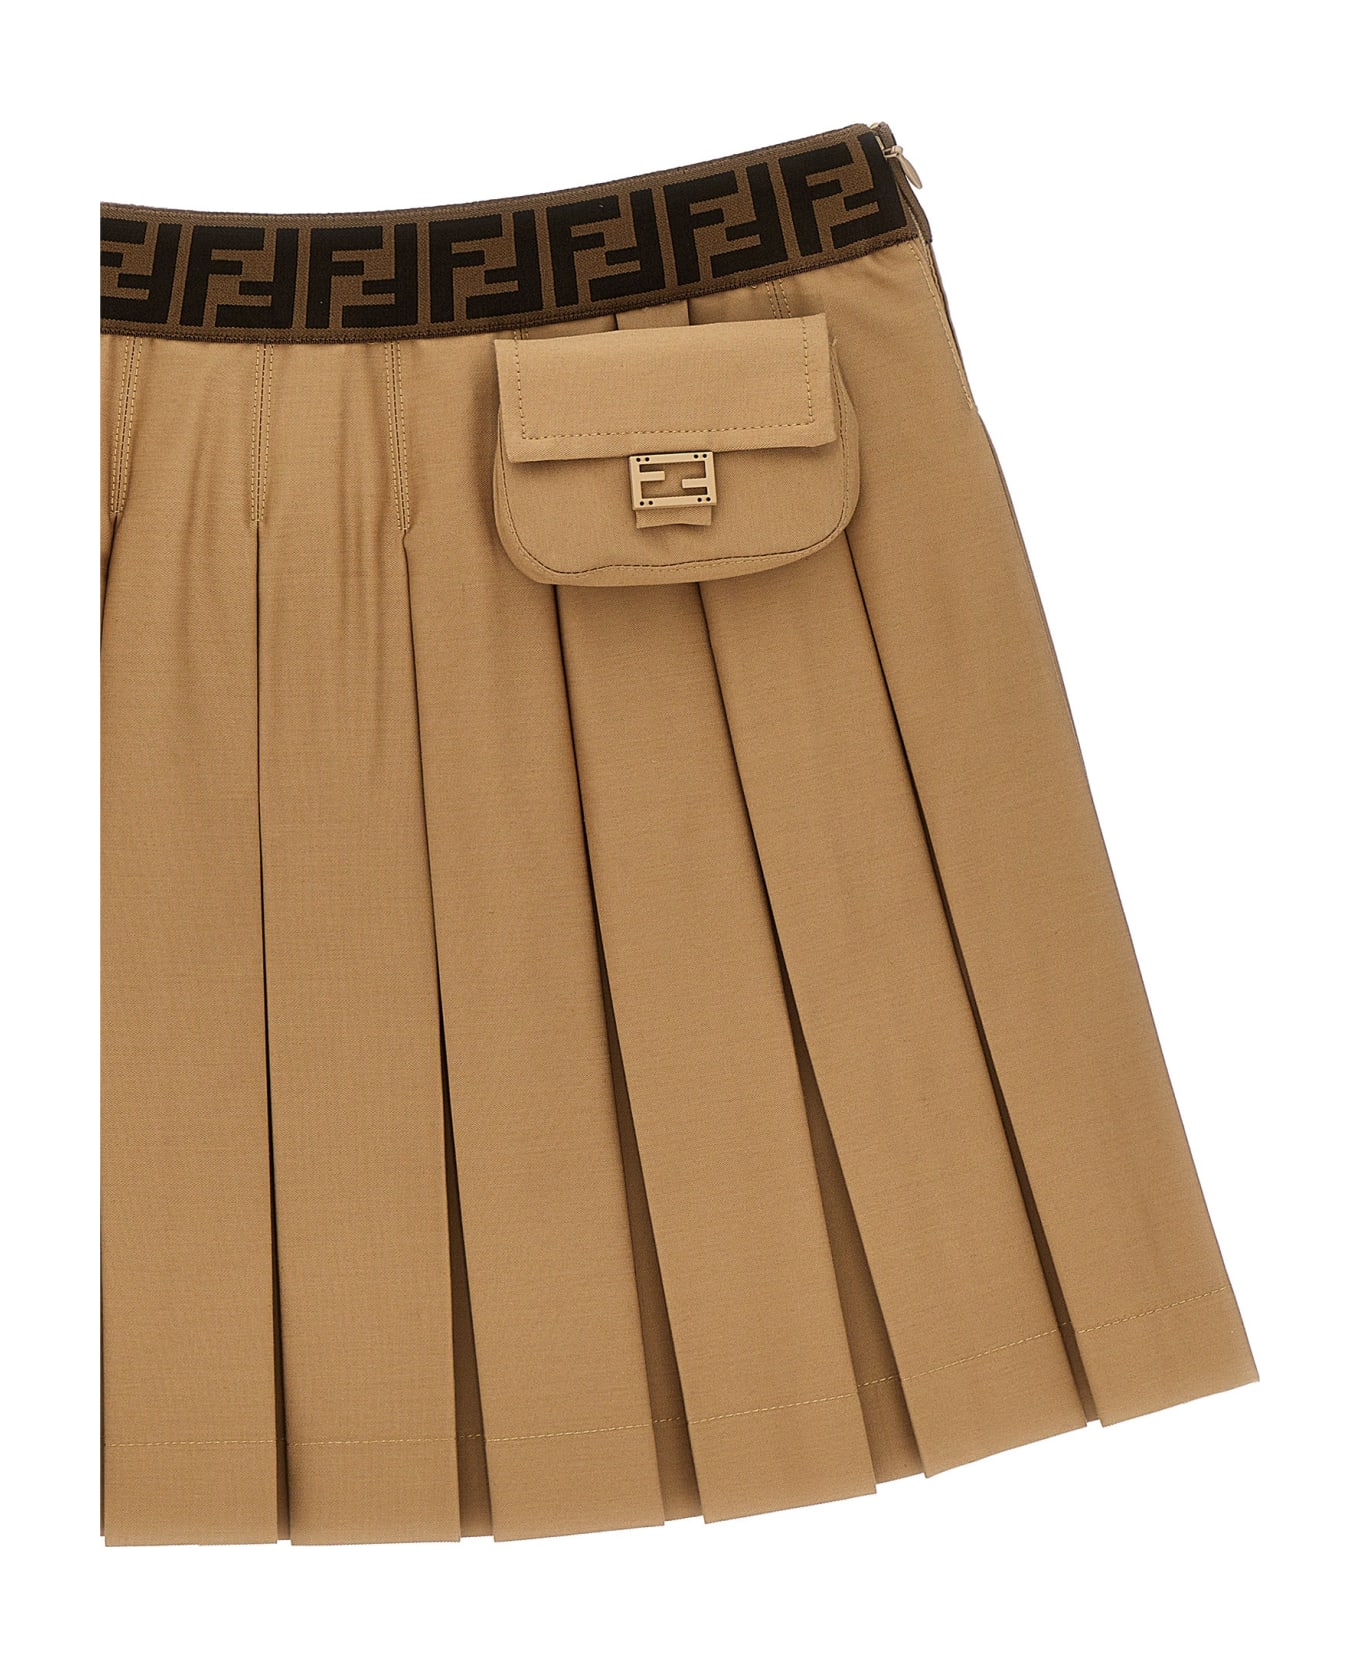 Fendi Pleated Skirt - Brown